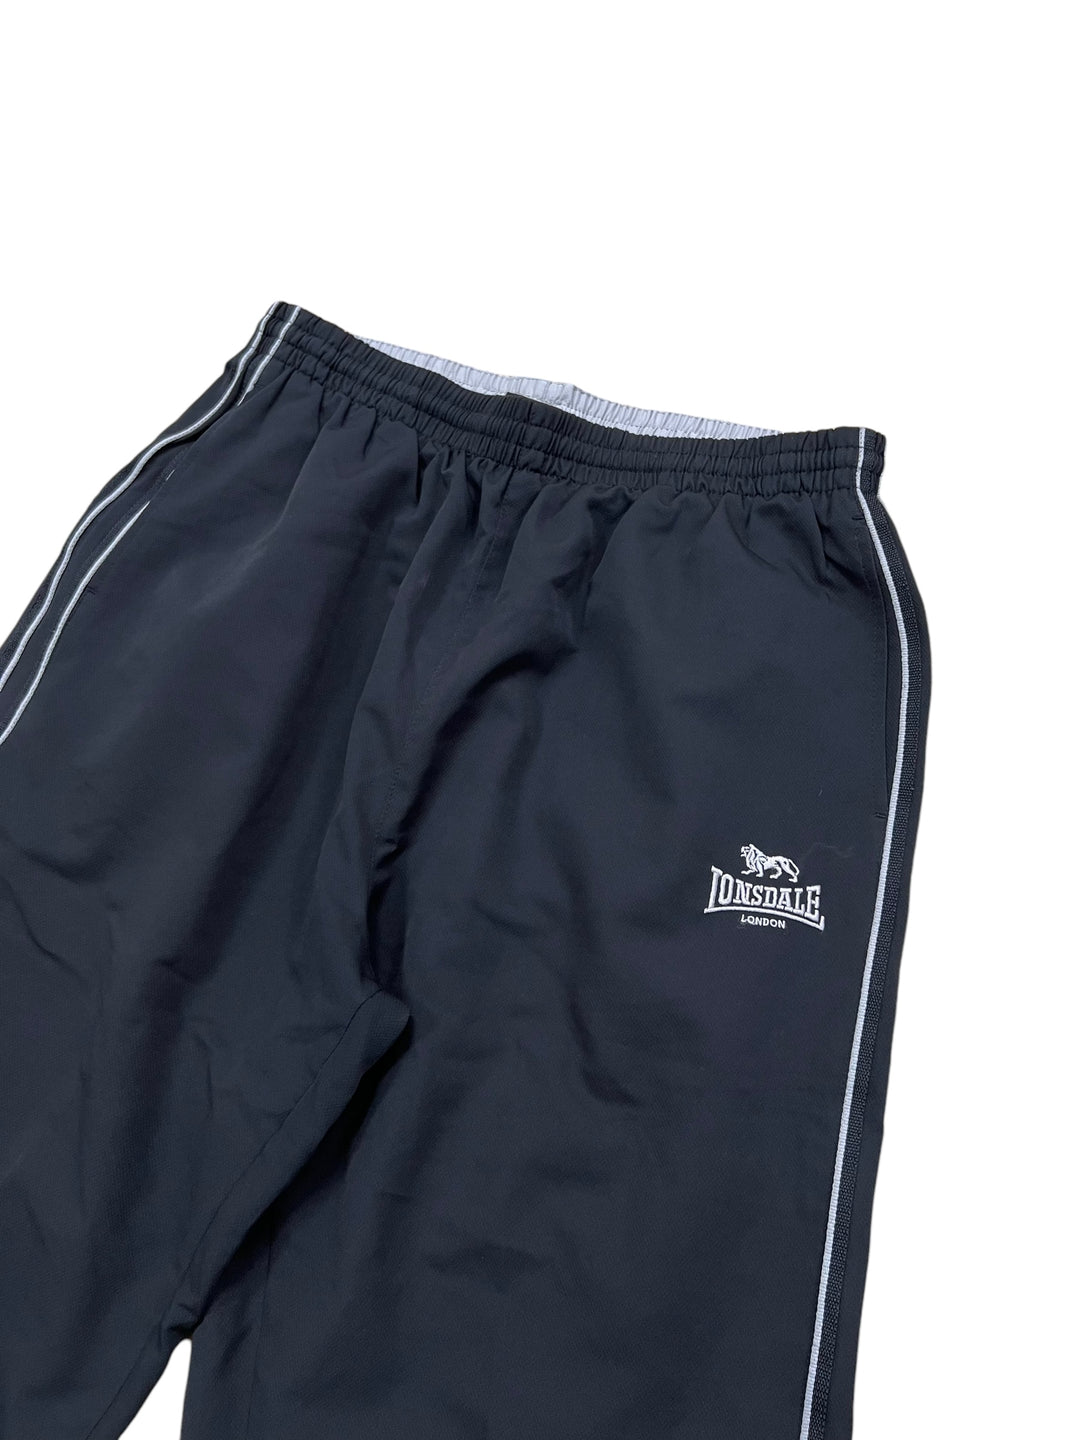 Lonsdale vintage long shorts men’s XXL